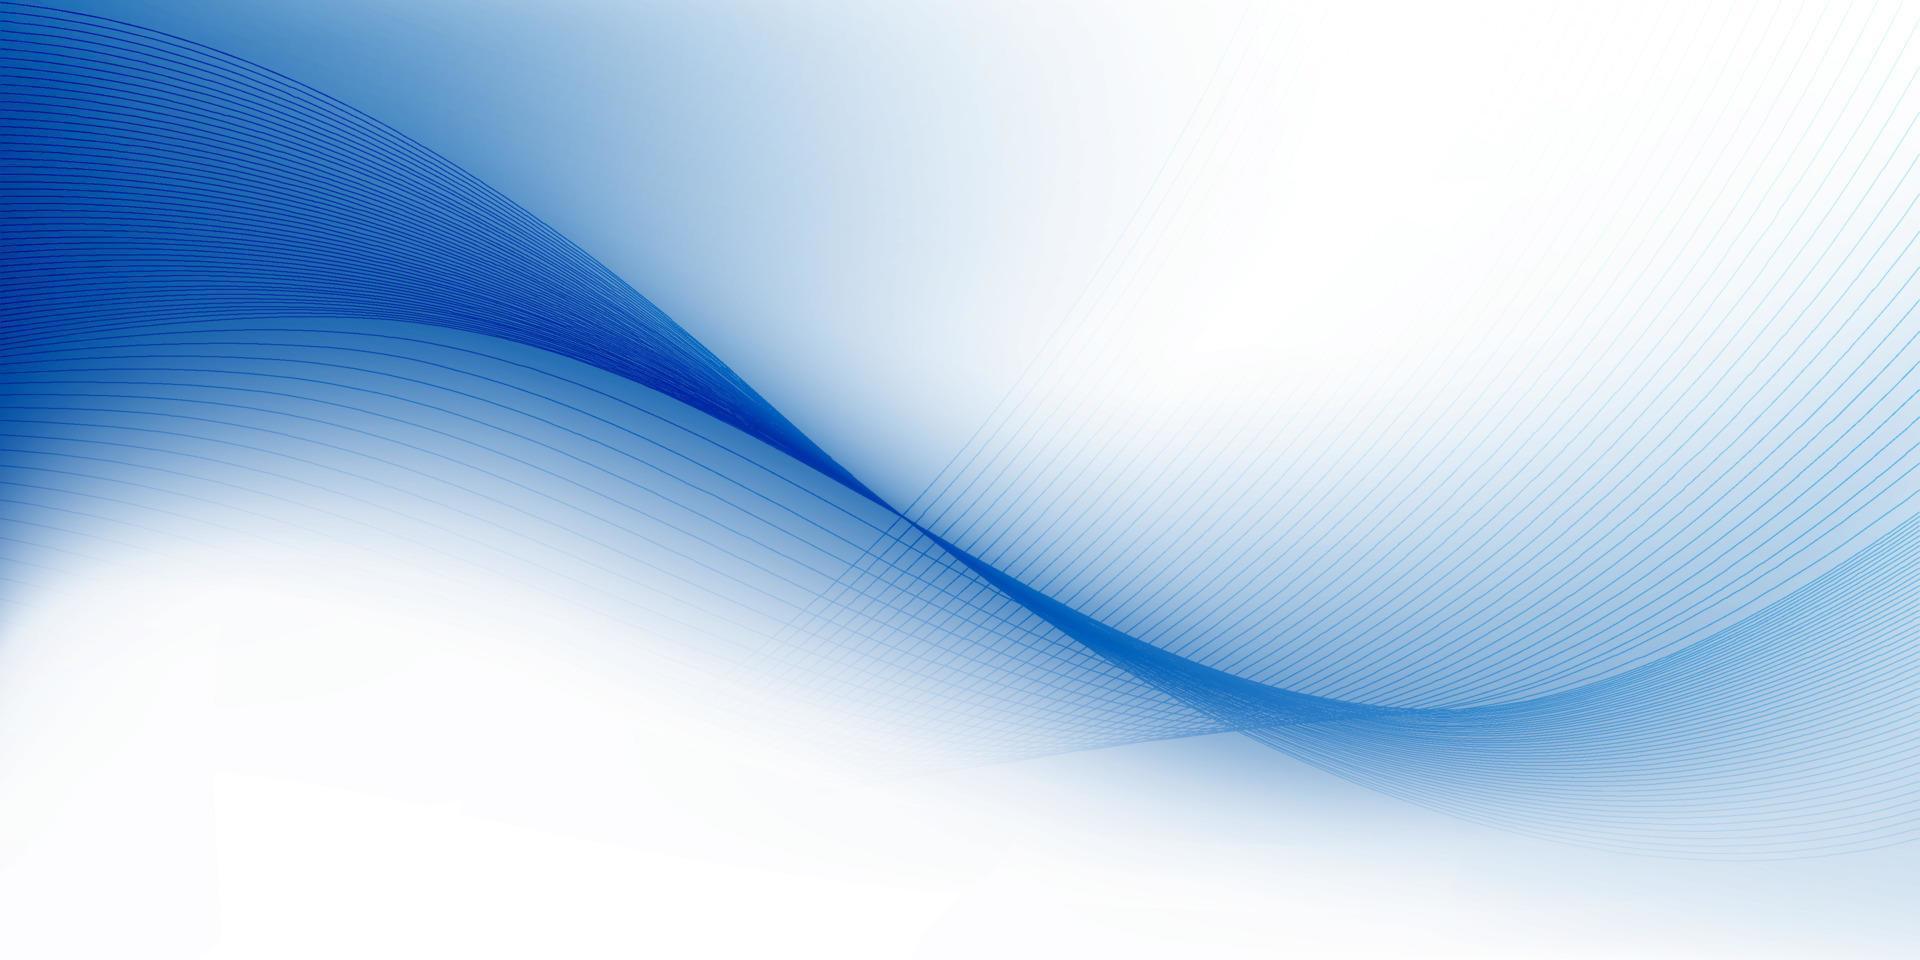 color blanco y azul abstracto, fondo de rayas de diseño moderno con forma redonda geométrica, patrón de onda. ilustración vectorial vector